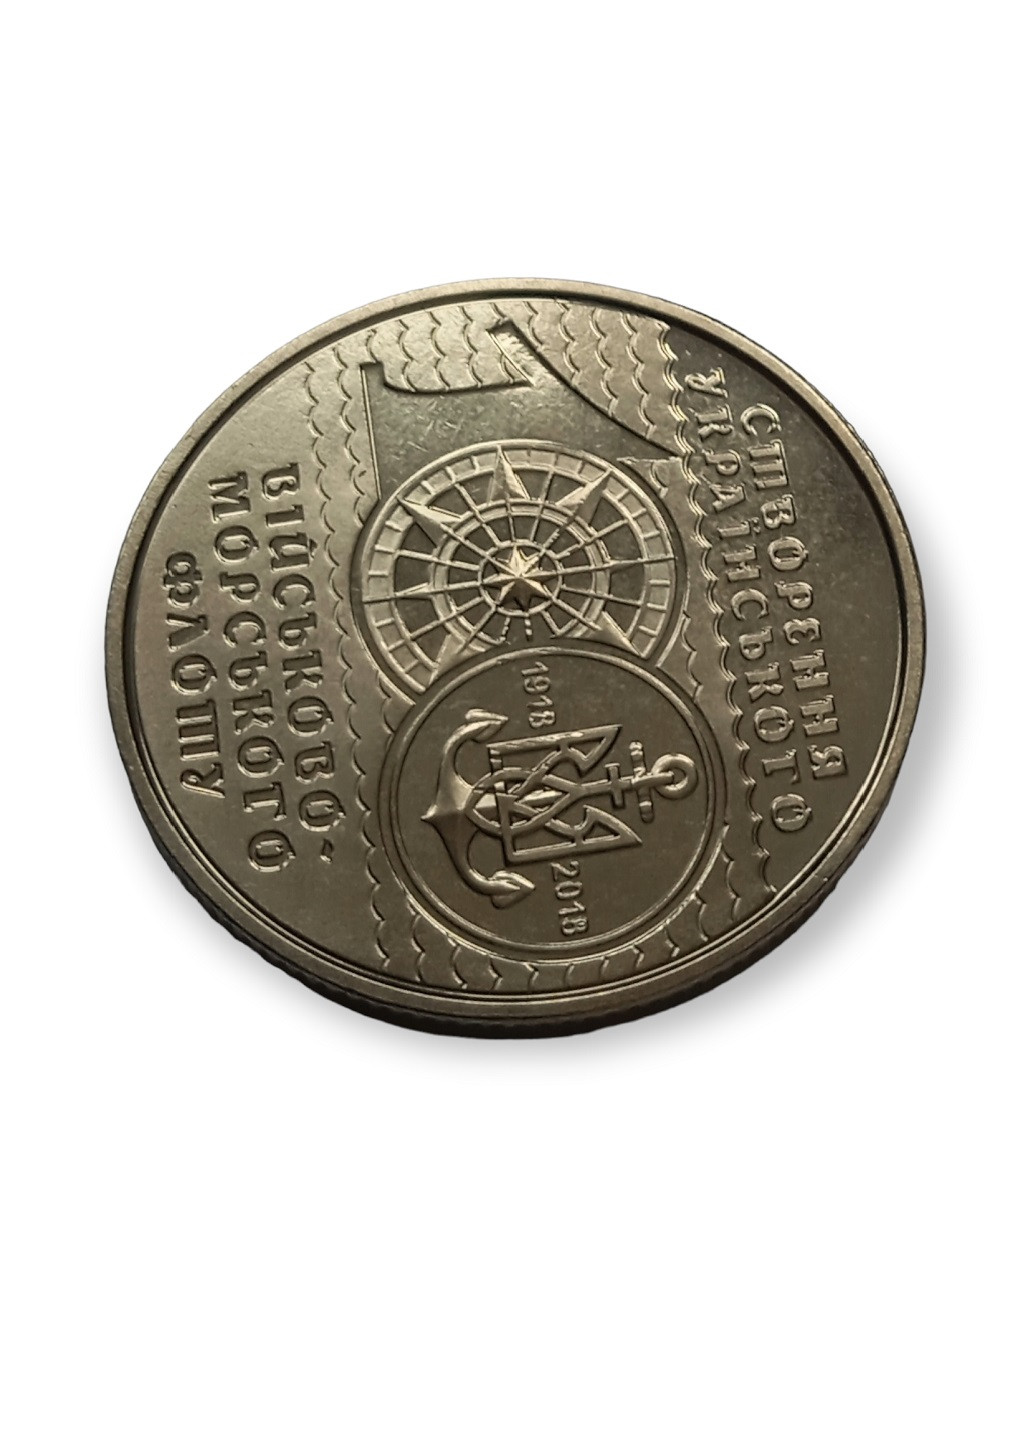 Монета Украины к 100-летию создания Украинского военно-морского флота Blue Orange (257210484)